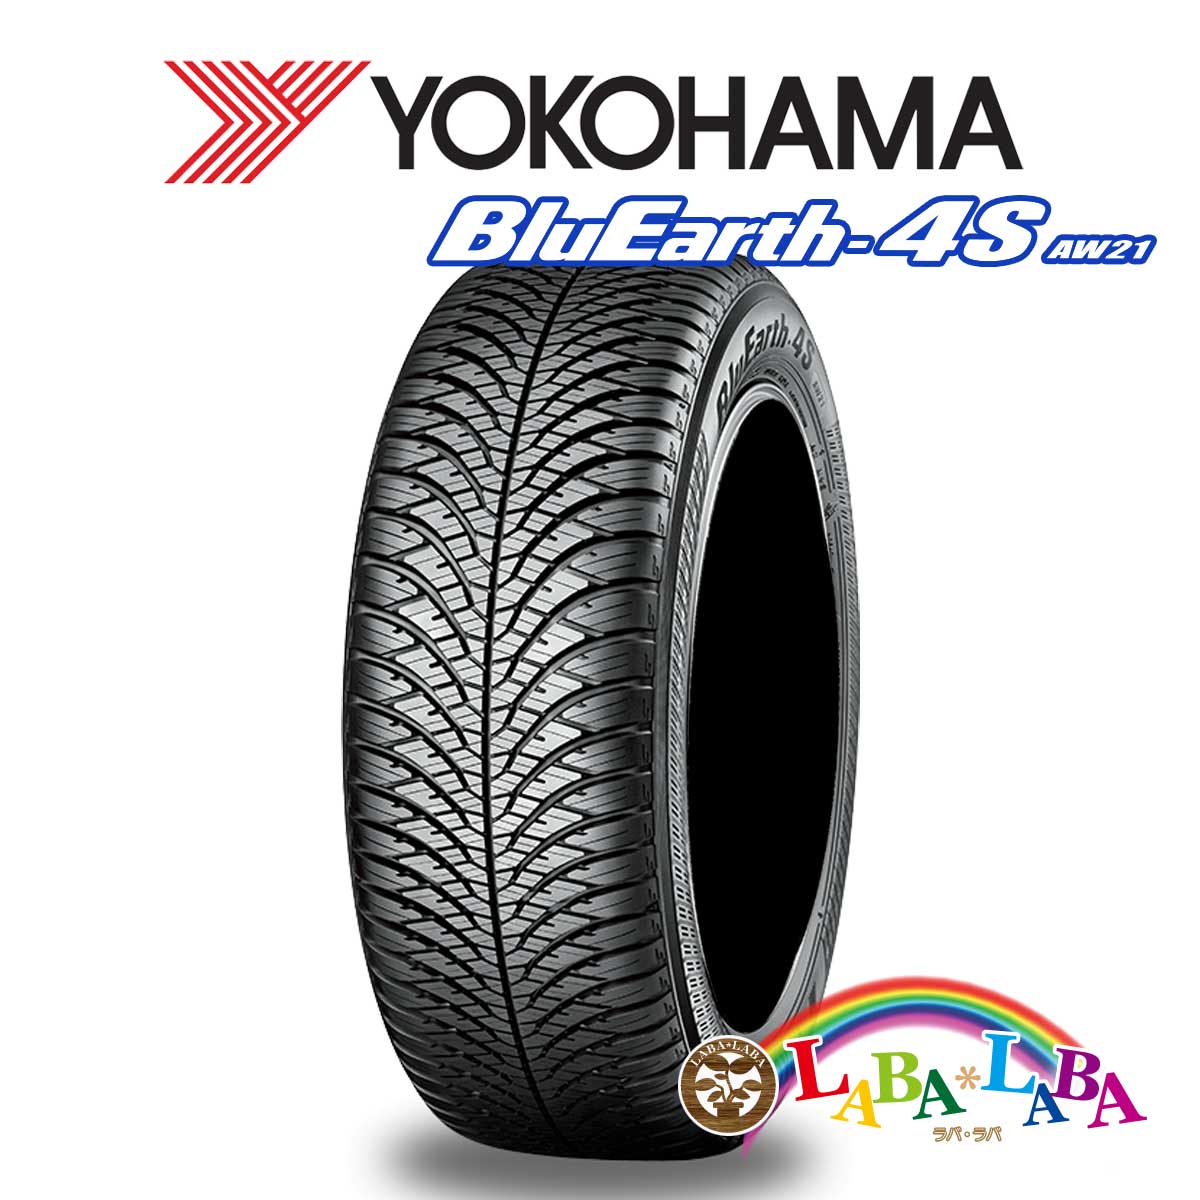 ２本以上送料無料 国産タイヤ オールシーズン 新品 タイヤのみ YOKOHAMA ヨコハマ ブルーアース 84H 2020モデル 人気急上昇 AW21 65R15 175 BluEarth-4S